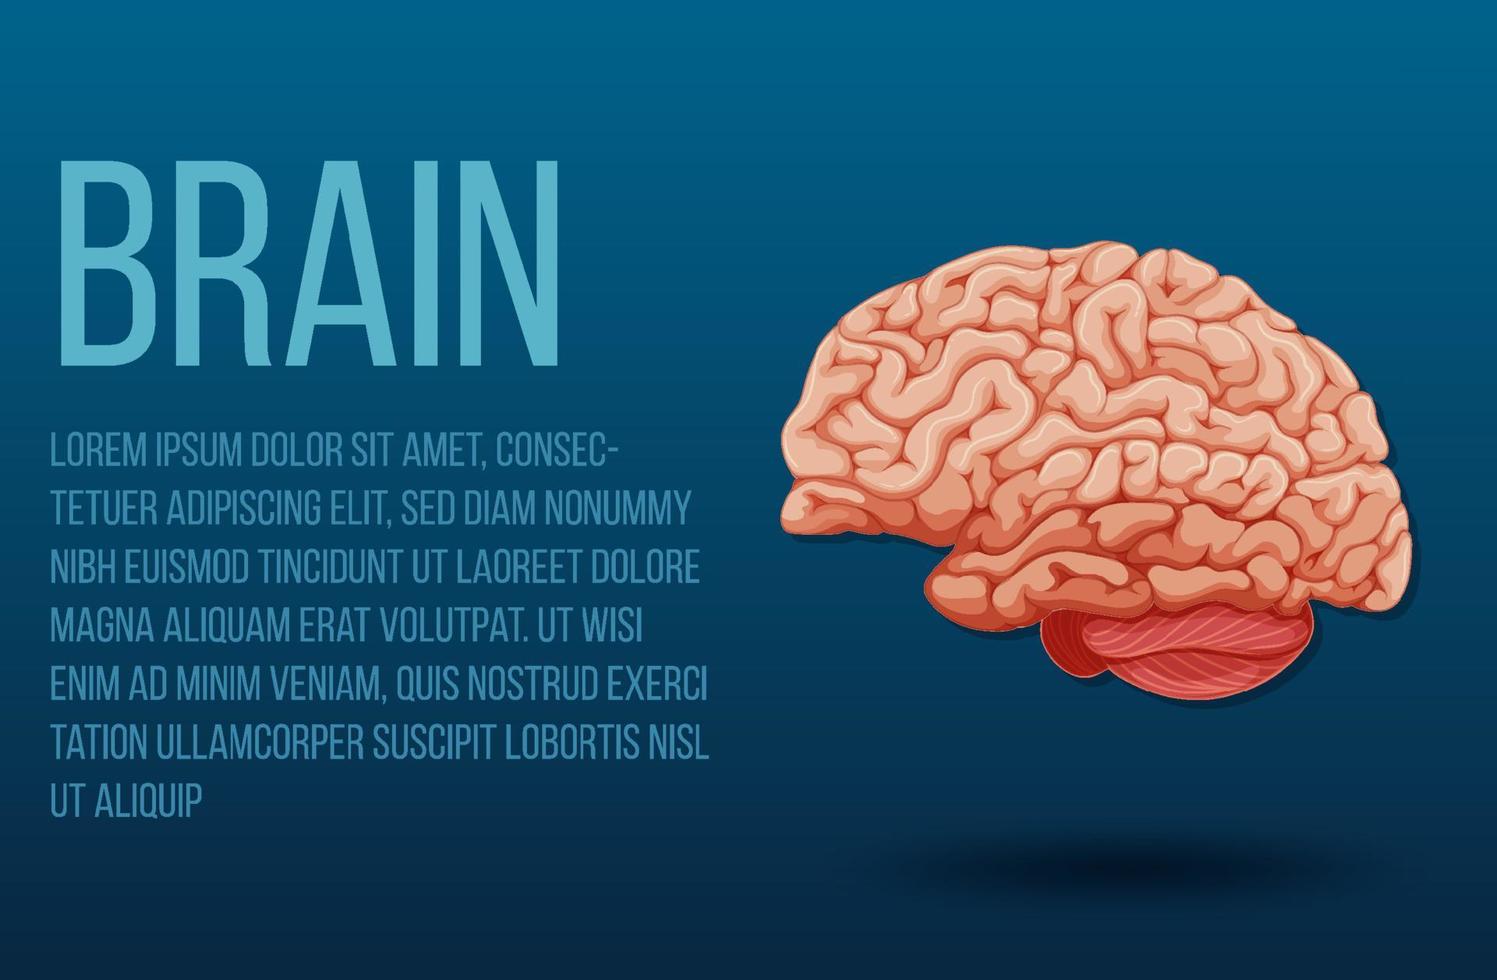 órgão interno humano com cérebro vetor